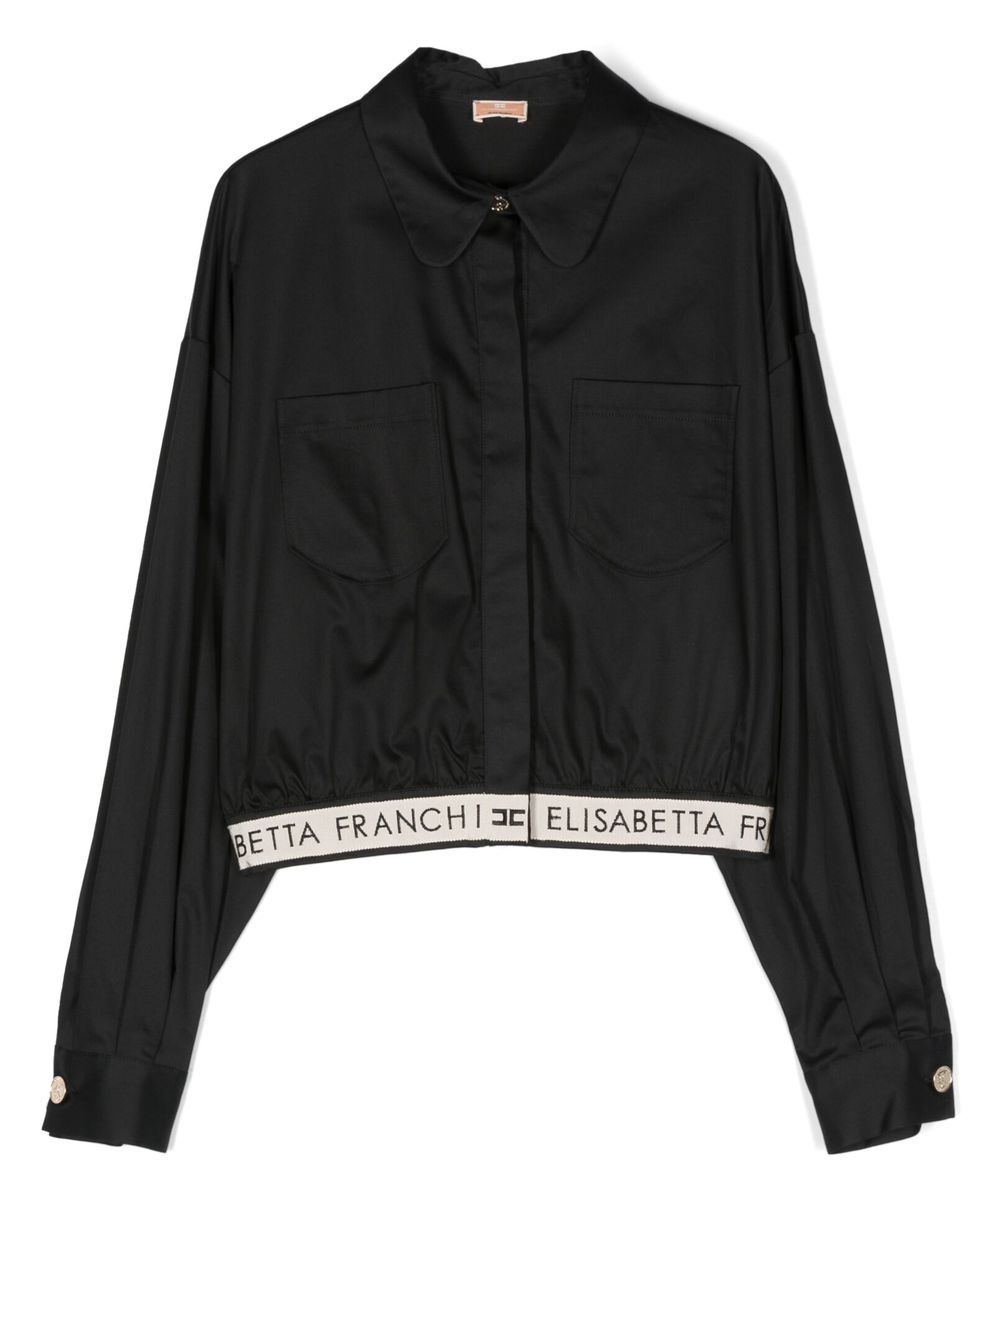 

Elisabetta Franchi La Mia Bambina camisa con franja del logo en el dobladillo - Negro